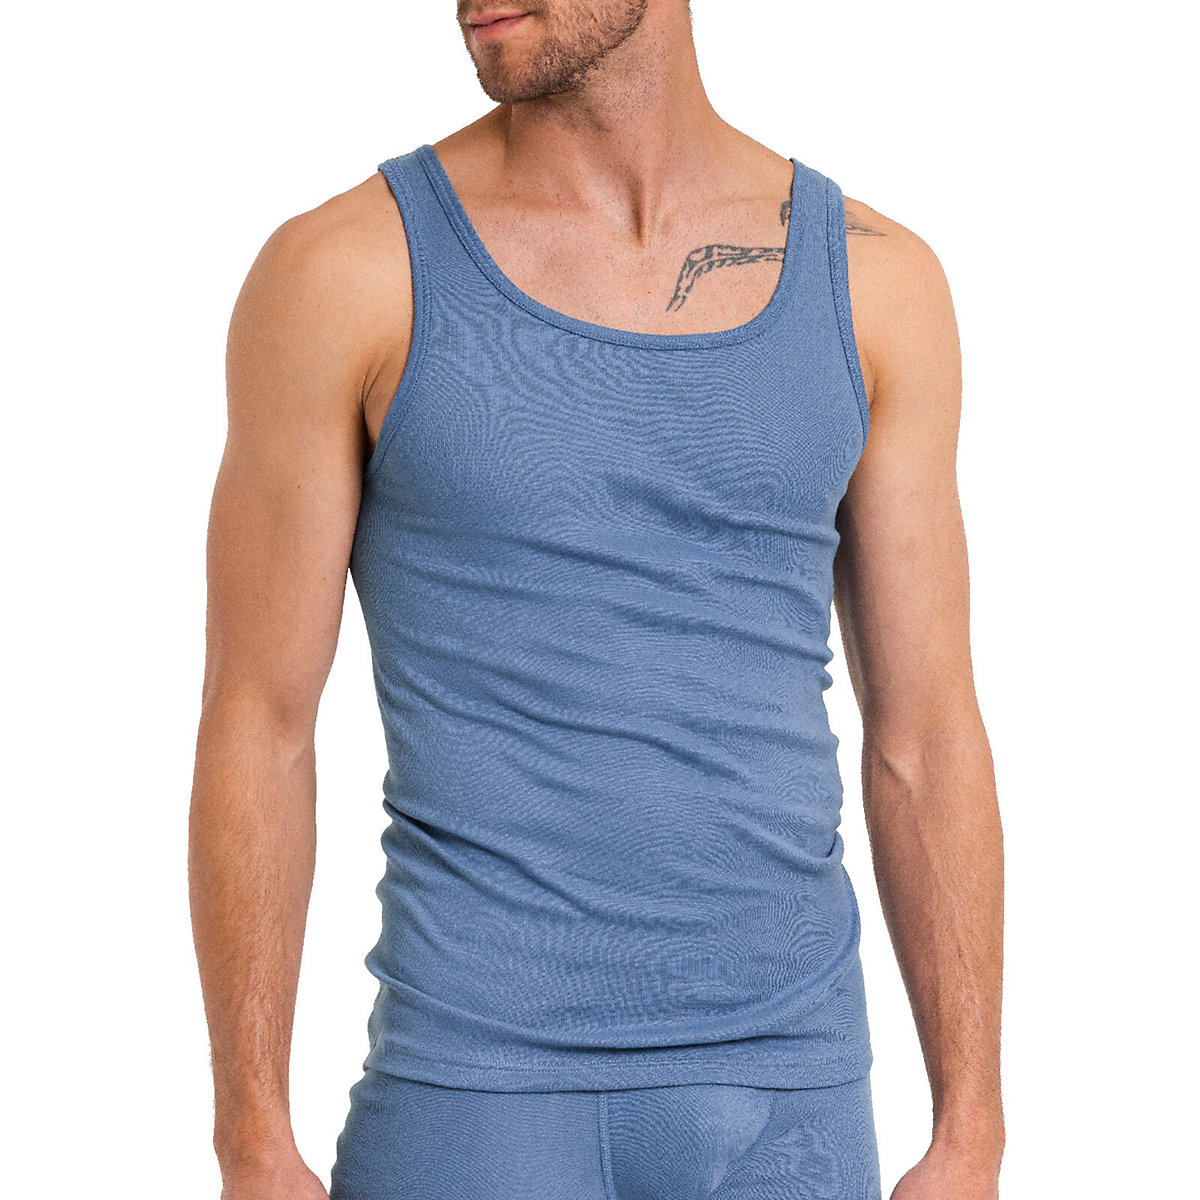 Kumpf Body Fashion 4er Sparpack Herren Unterhemd Bio Cotton Unterhemden blau/rot